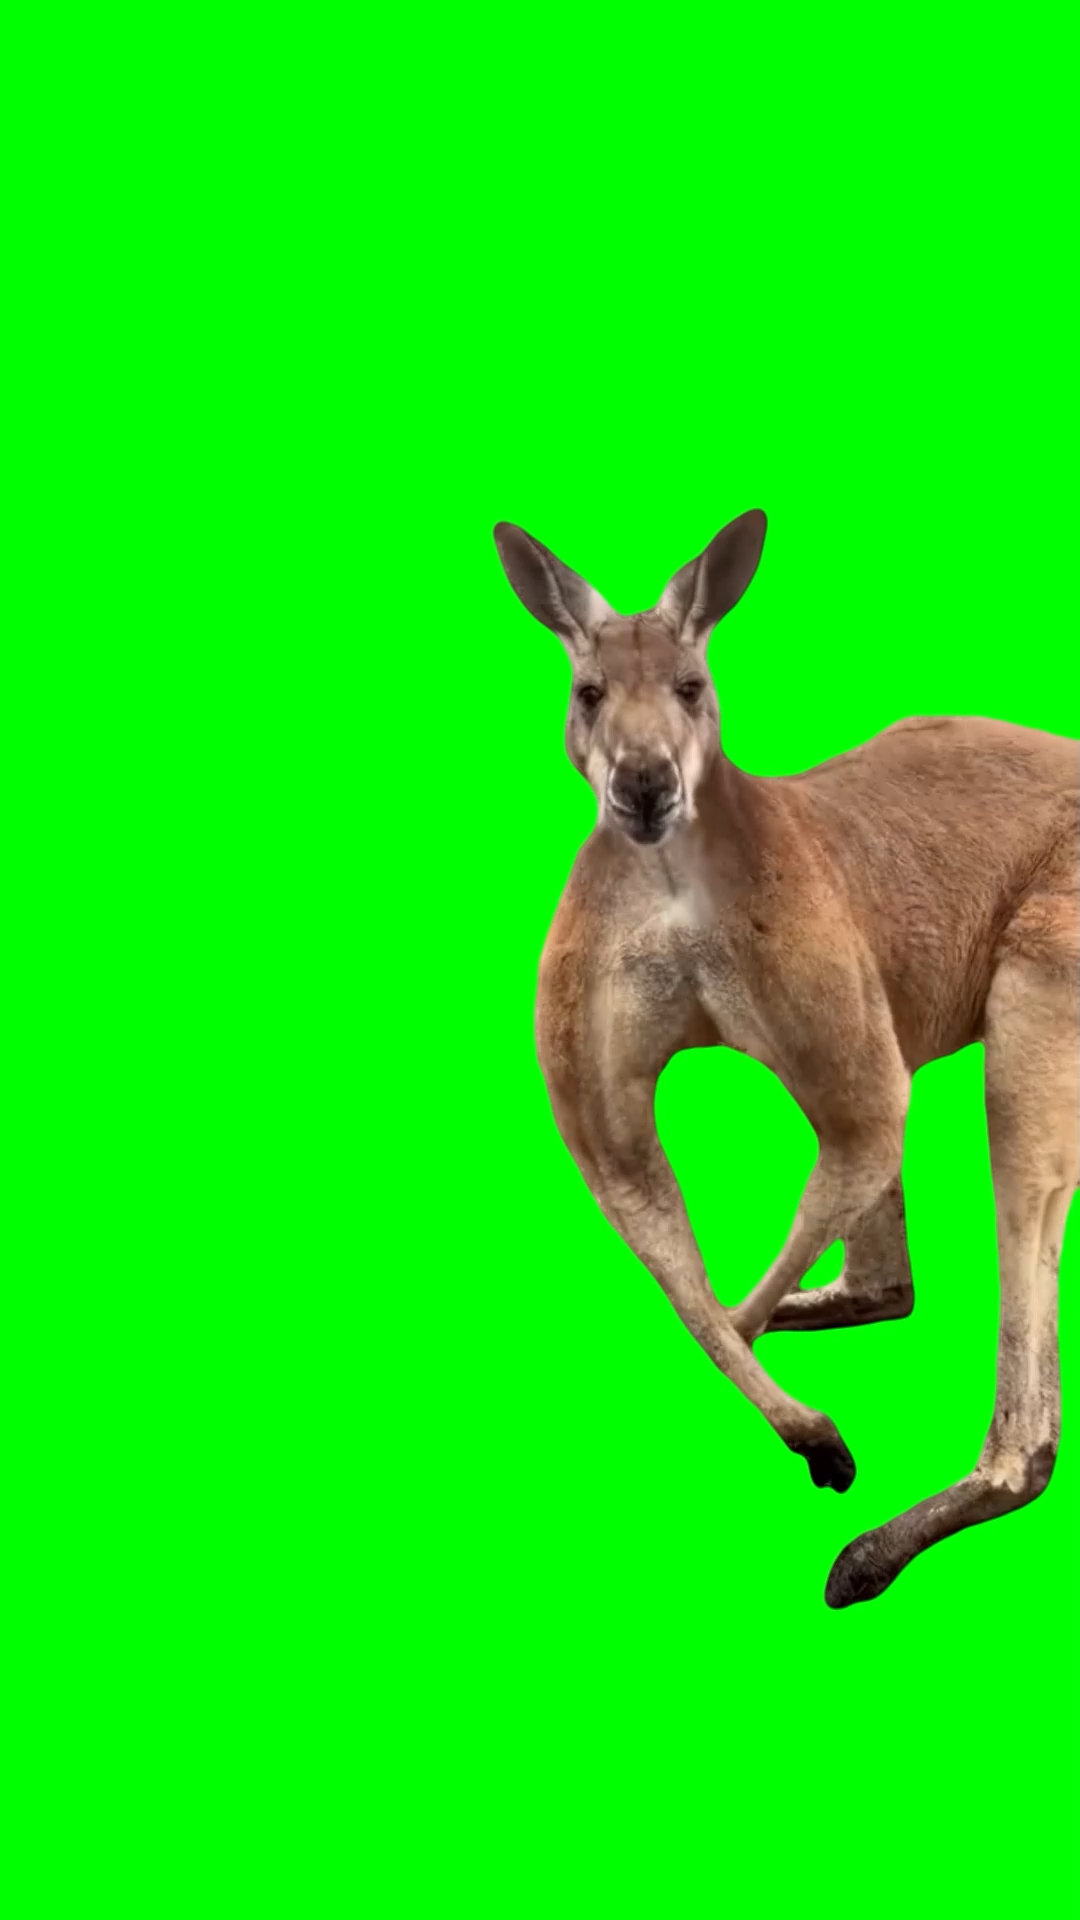 Kangaroo flexing muscles  (Green Screen)